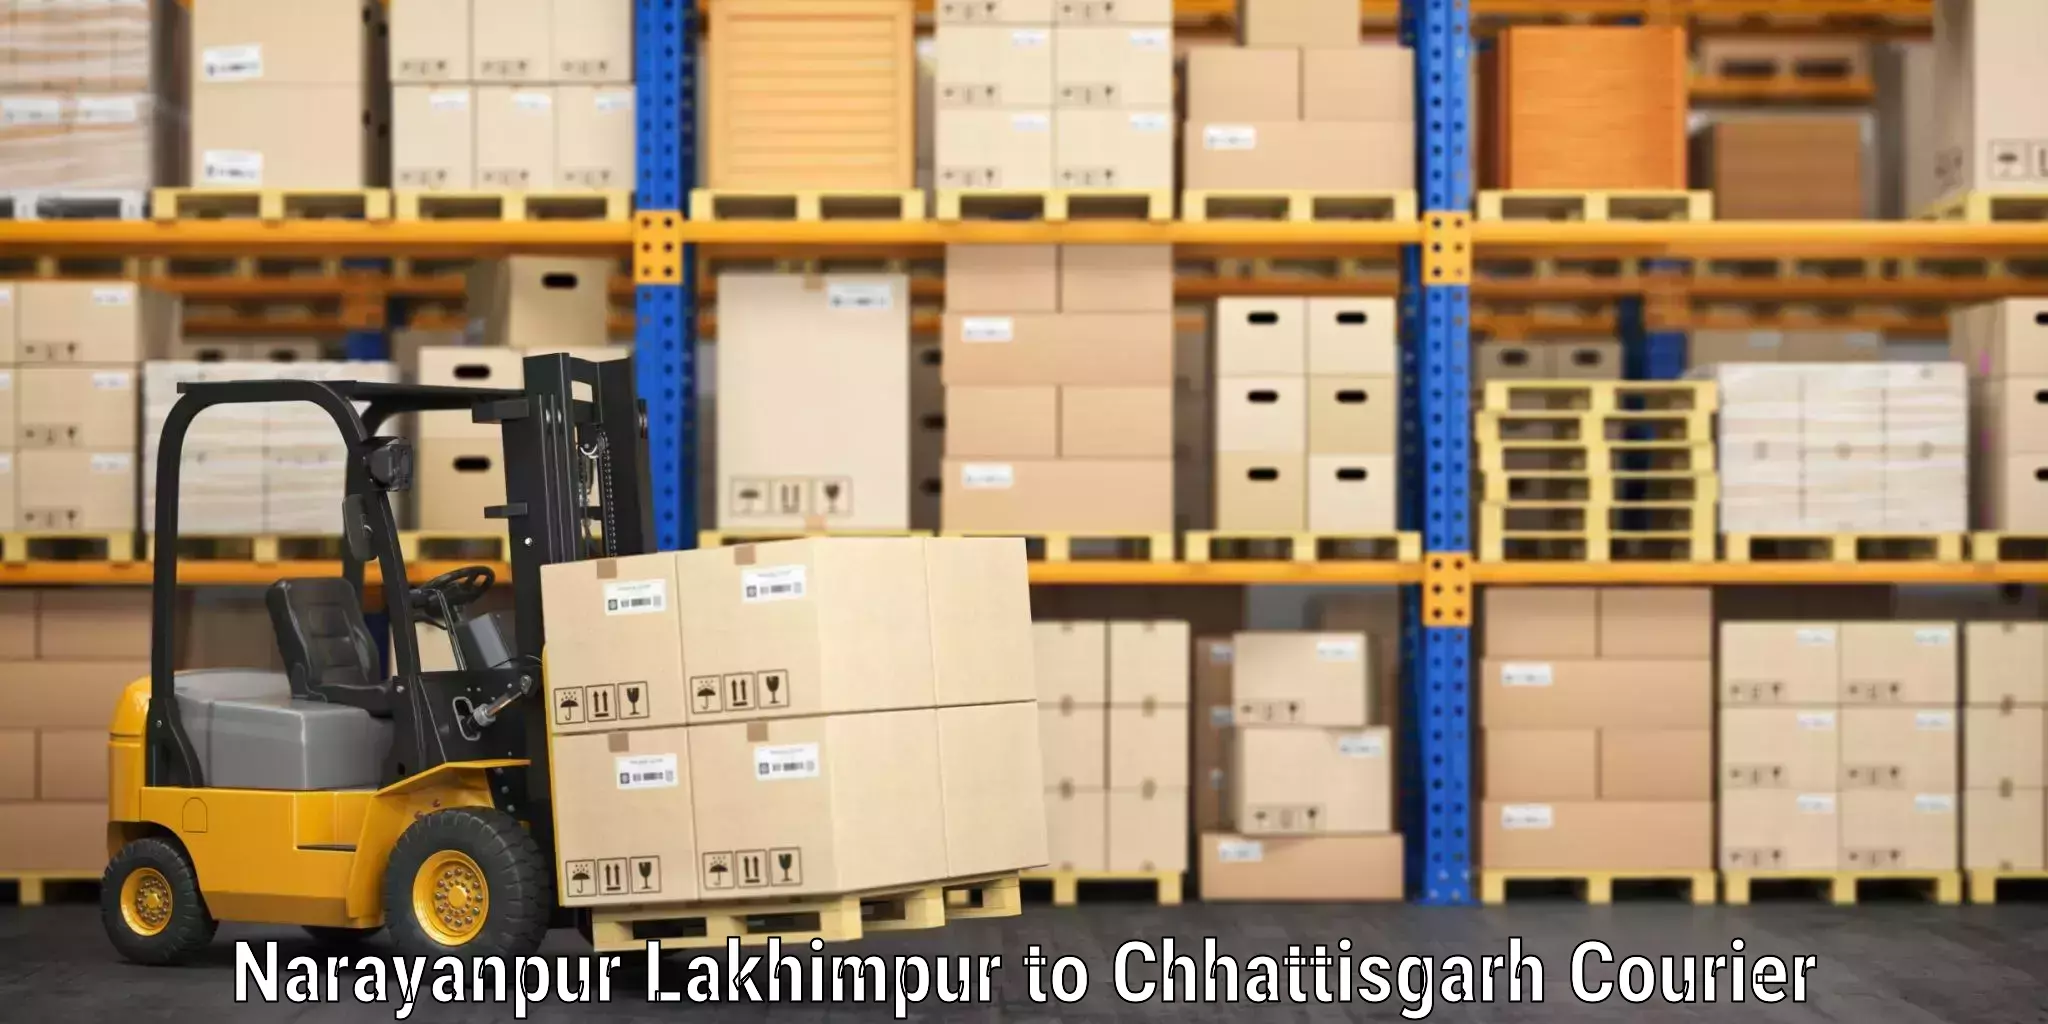 Weekend baggage shipping Narayanpur Lakhimpur to Chhattisgarh